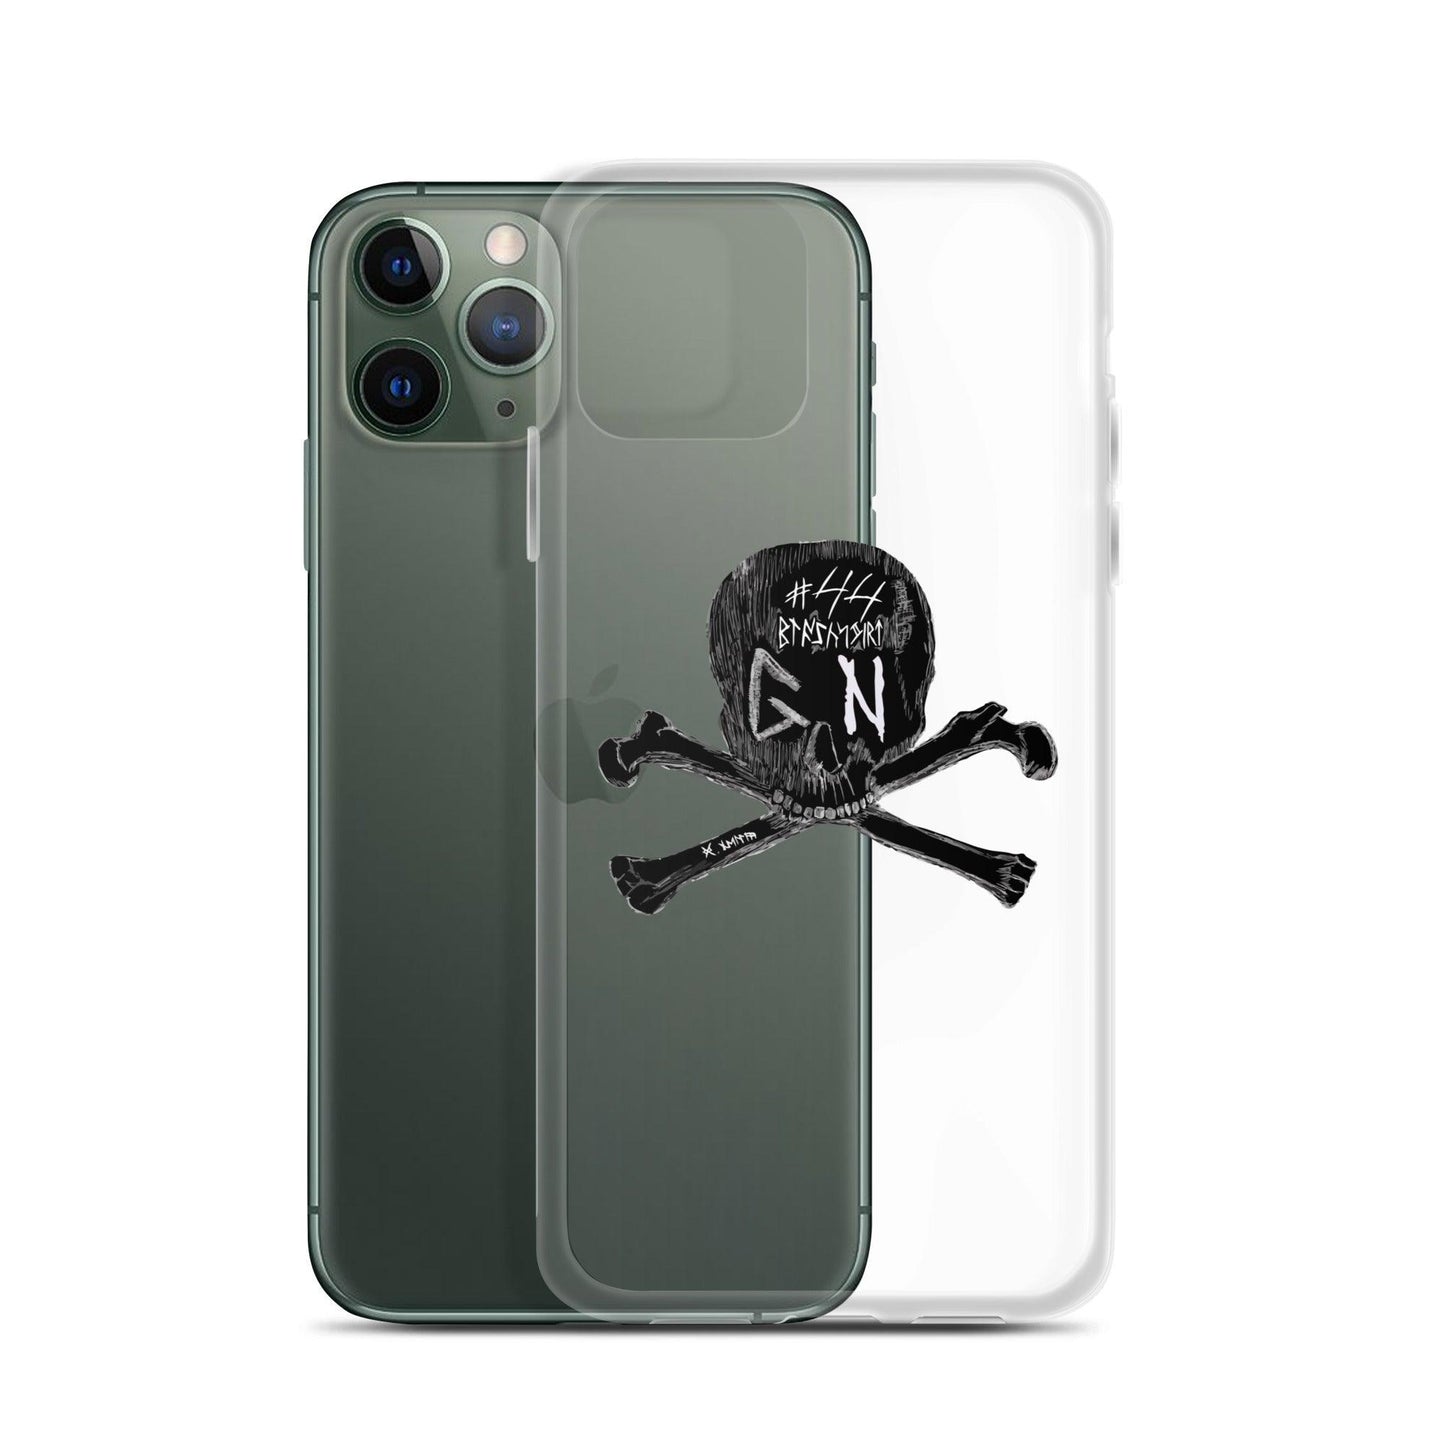 Garrett Nelson "GN44" iPhone Case - Fan Arch